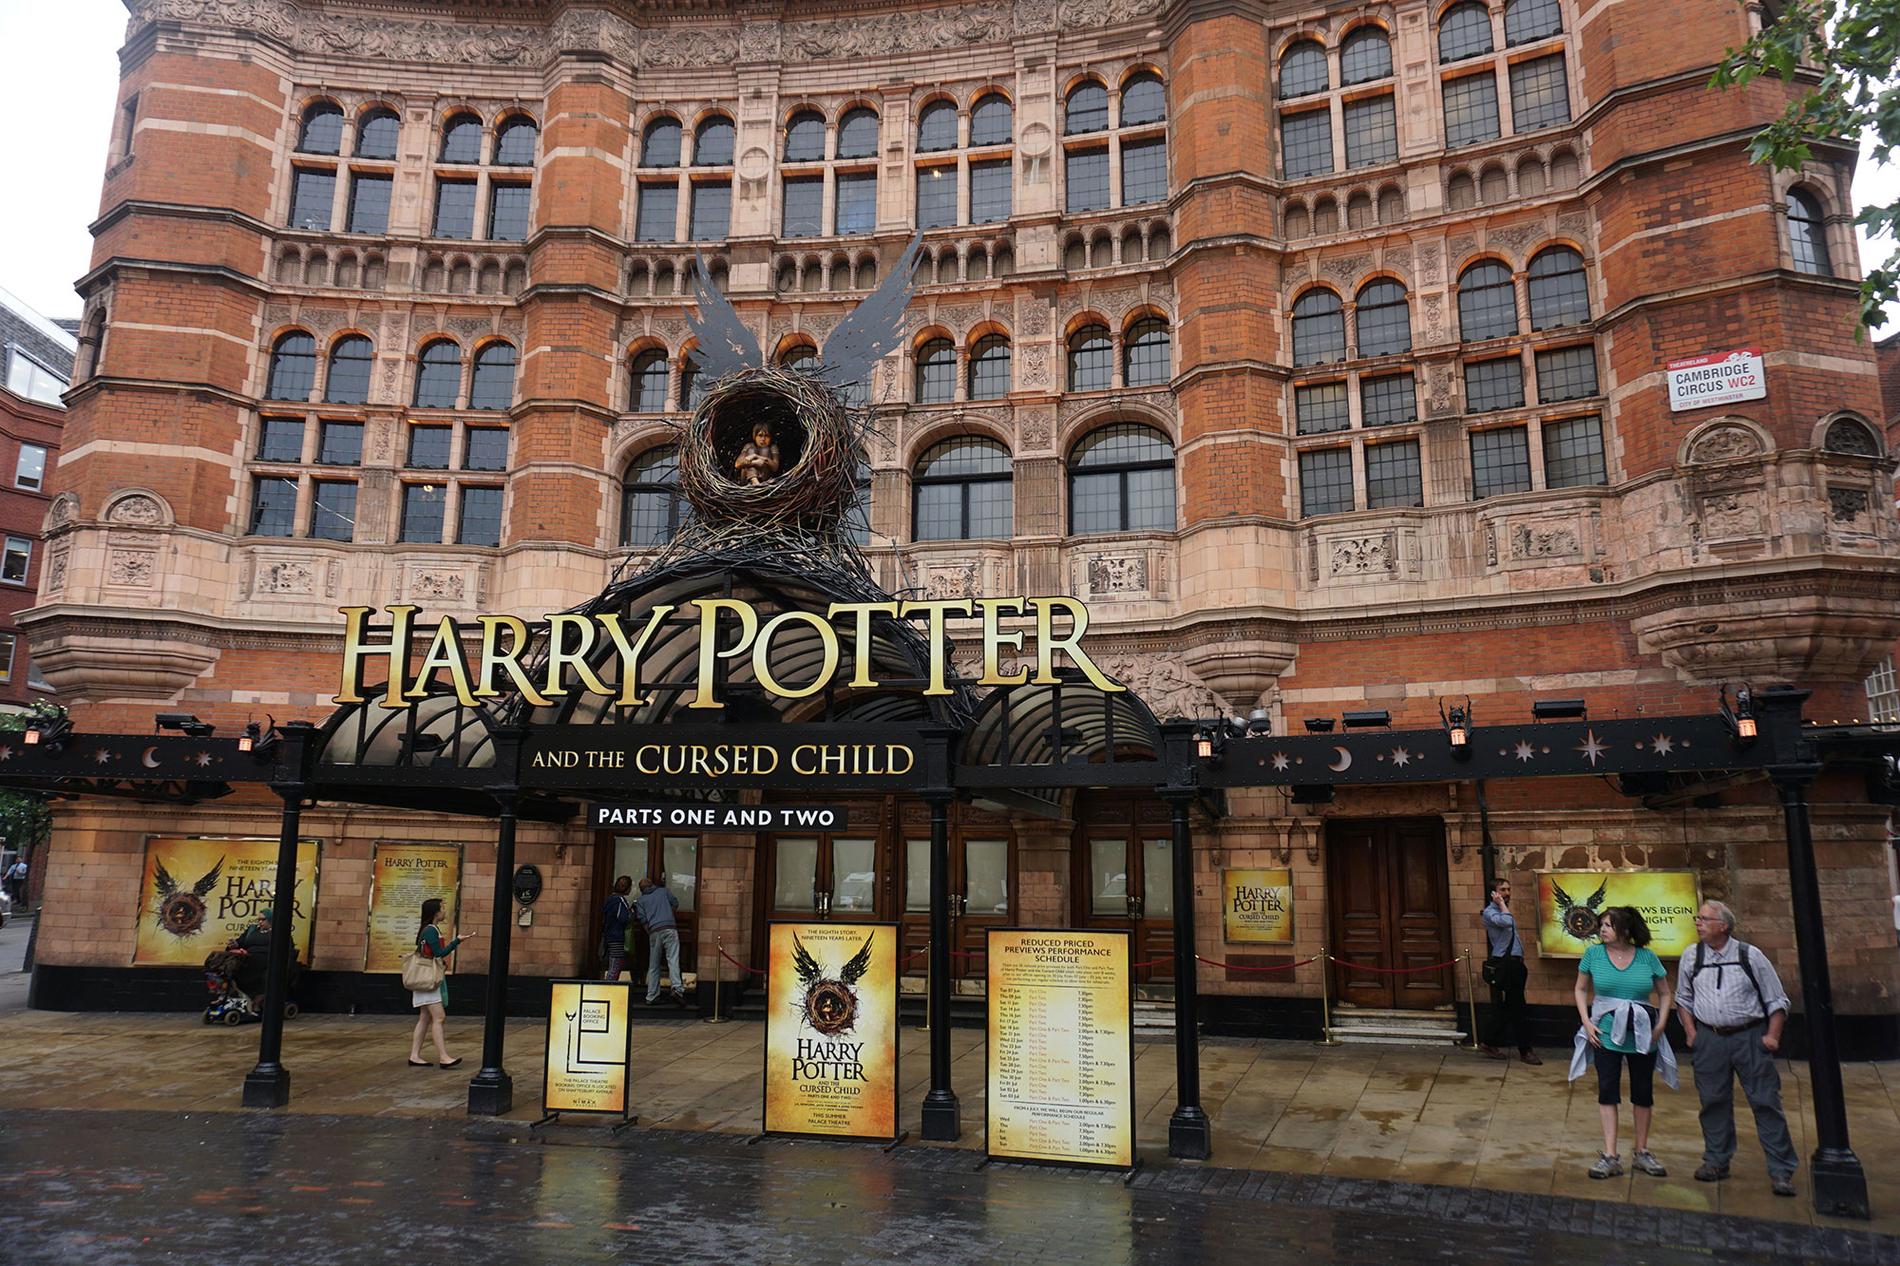 Harry Potter-pjäsen sätts upp på The Palace theatre i London.